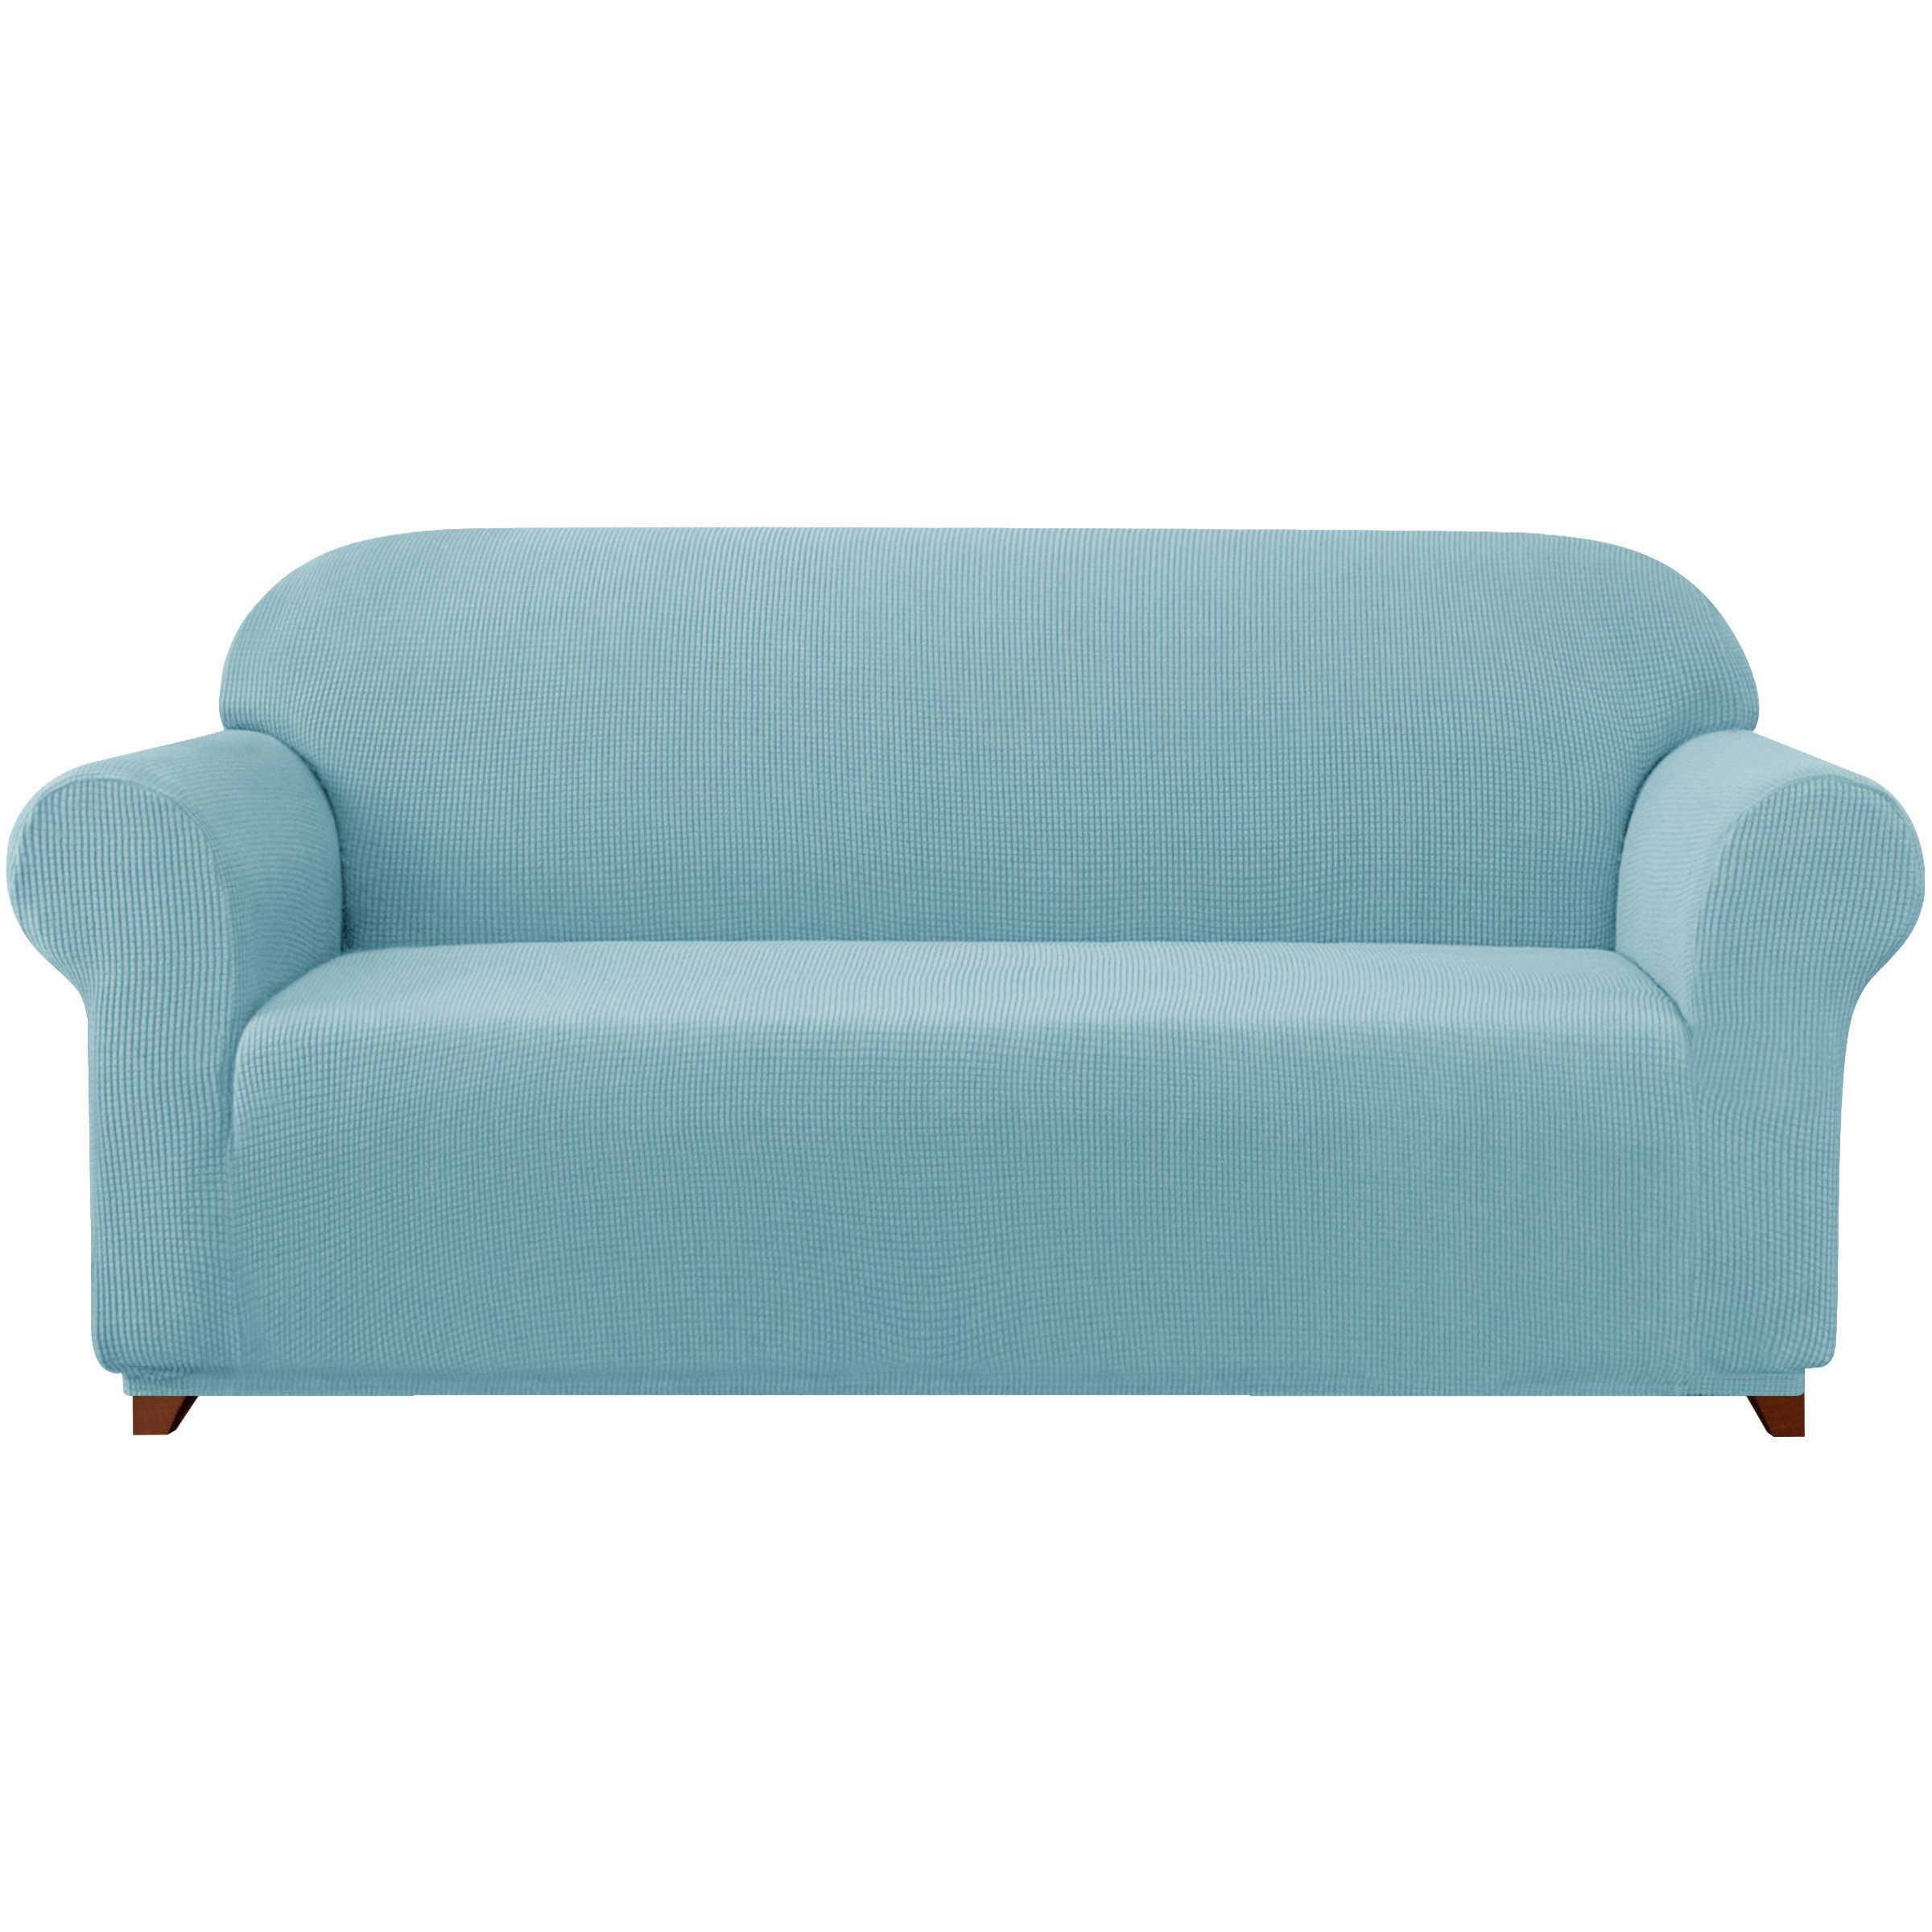 Sofahusse 2/3/4 Sitzer Sofabezug, SUBRTEX, mit dezentem Muster hellblau